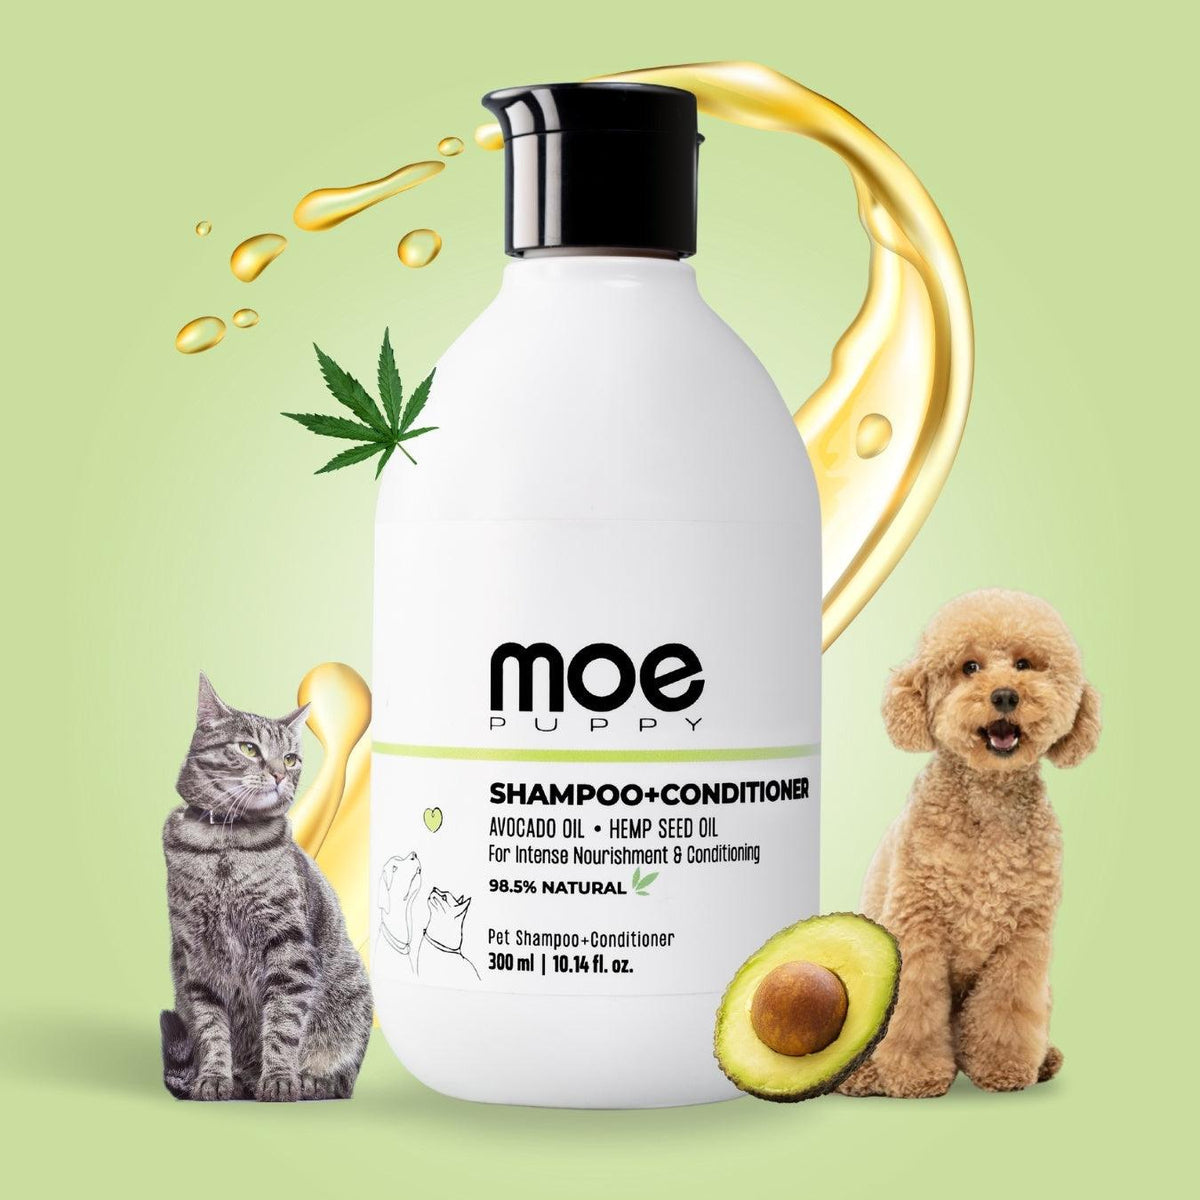 Shampoo+Conditioner - Moe Puppy